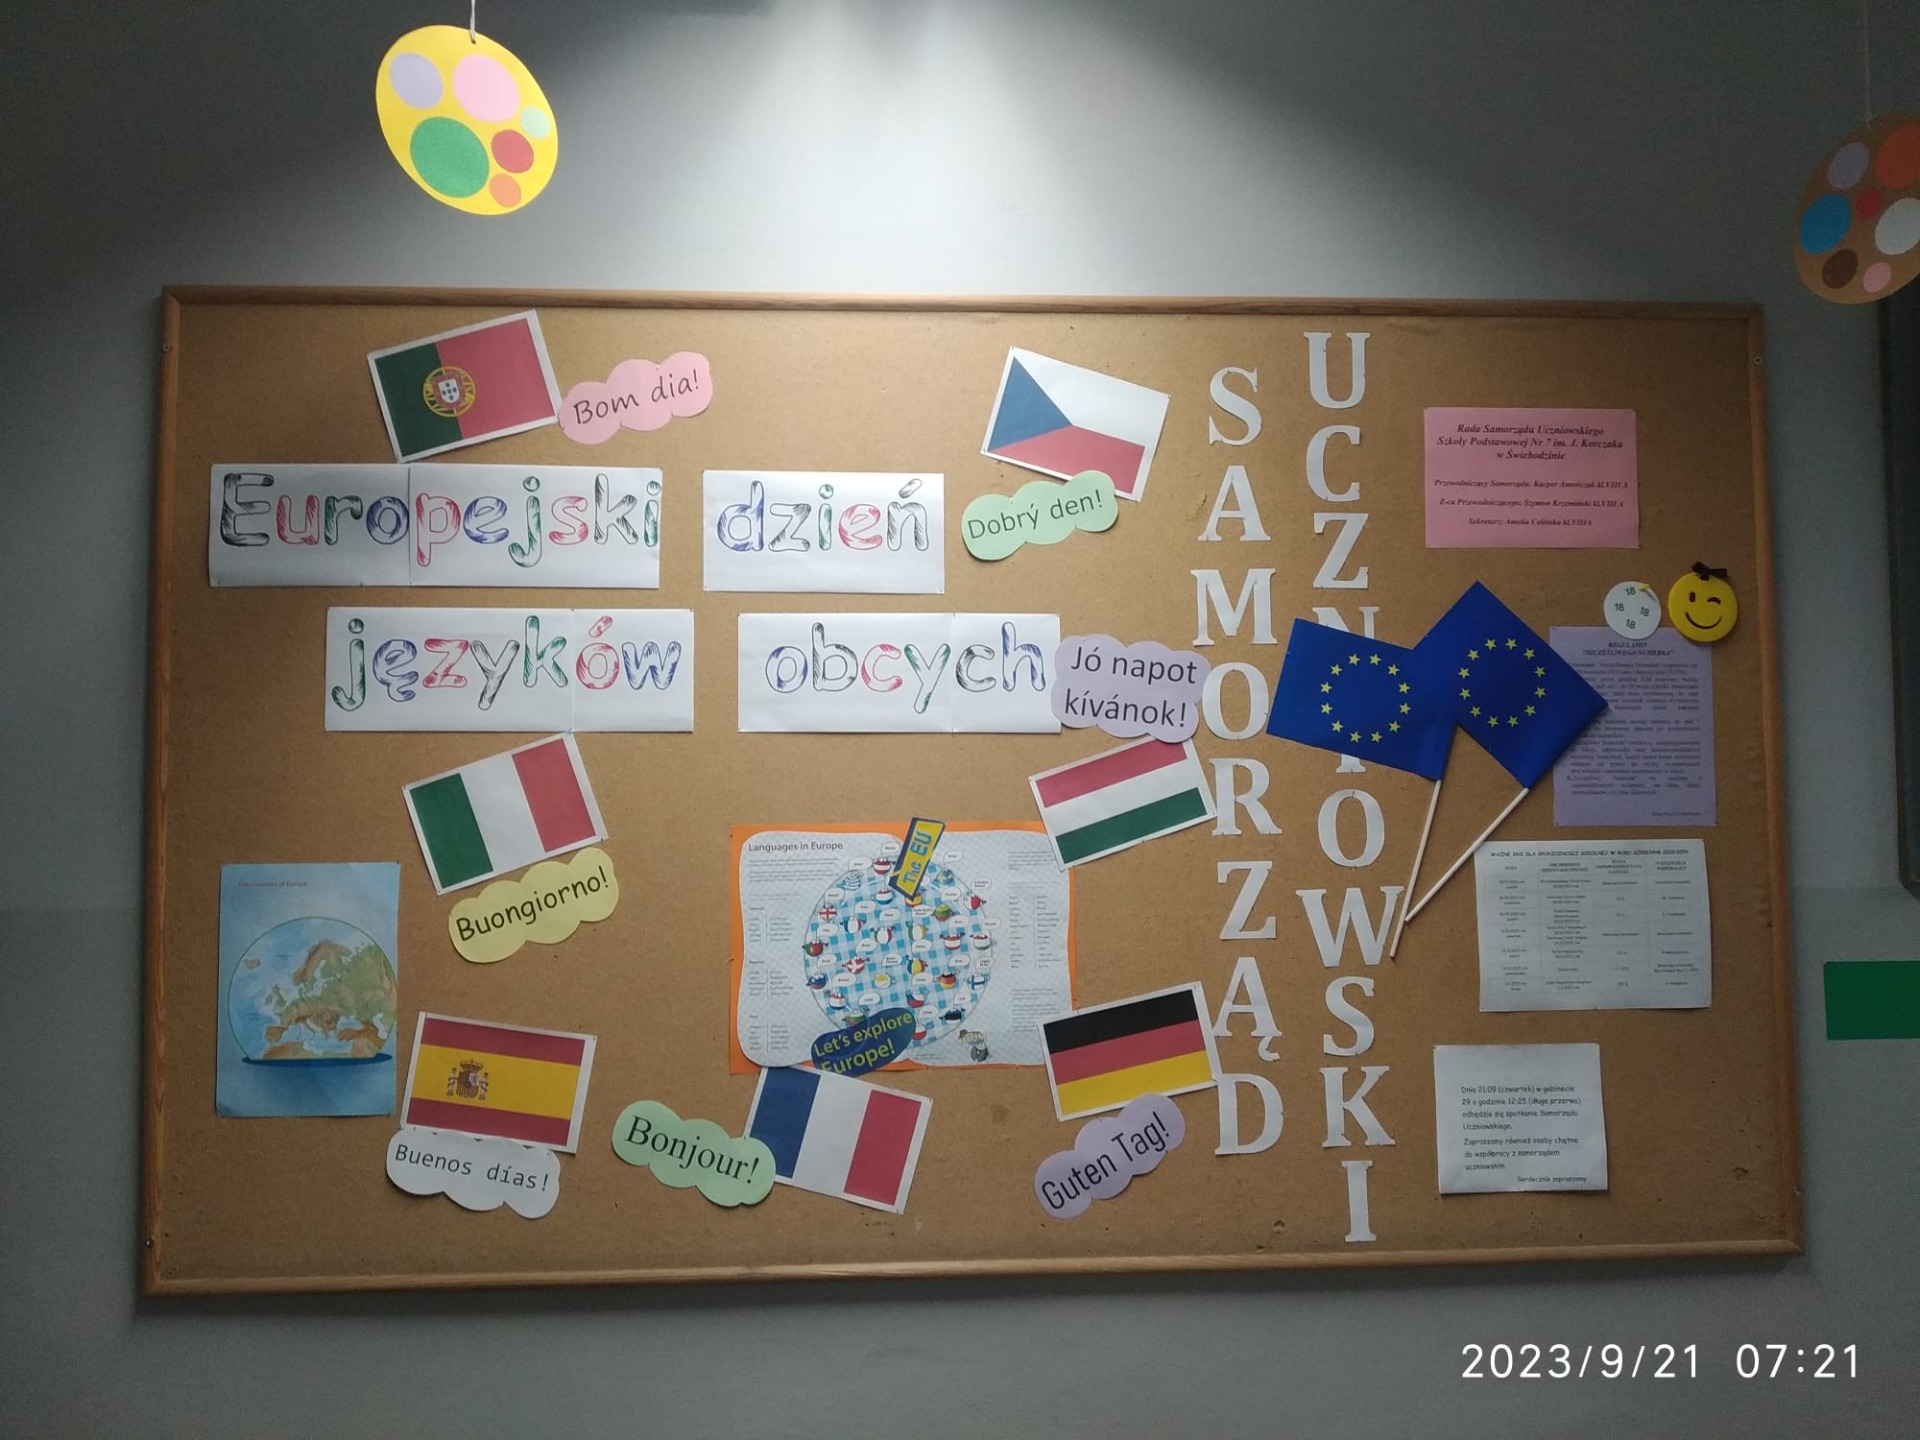 Europejski Dzień Języków - Obrazek 4